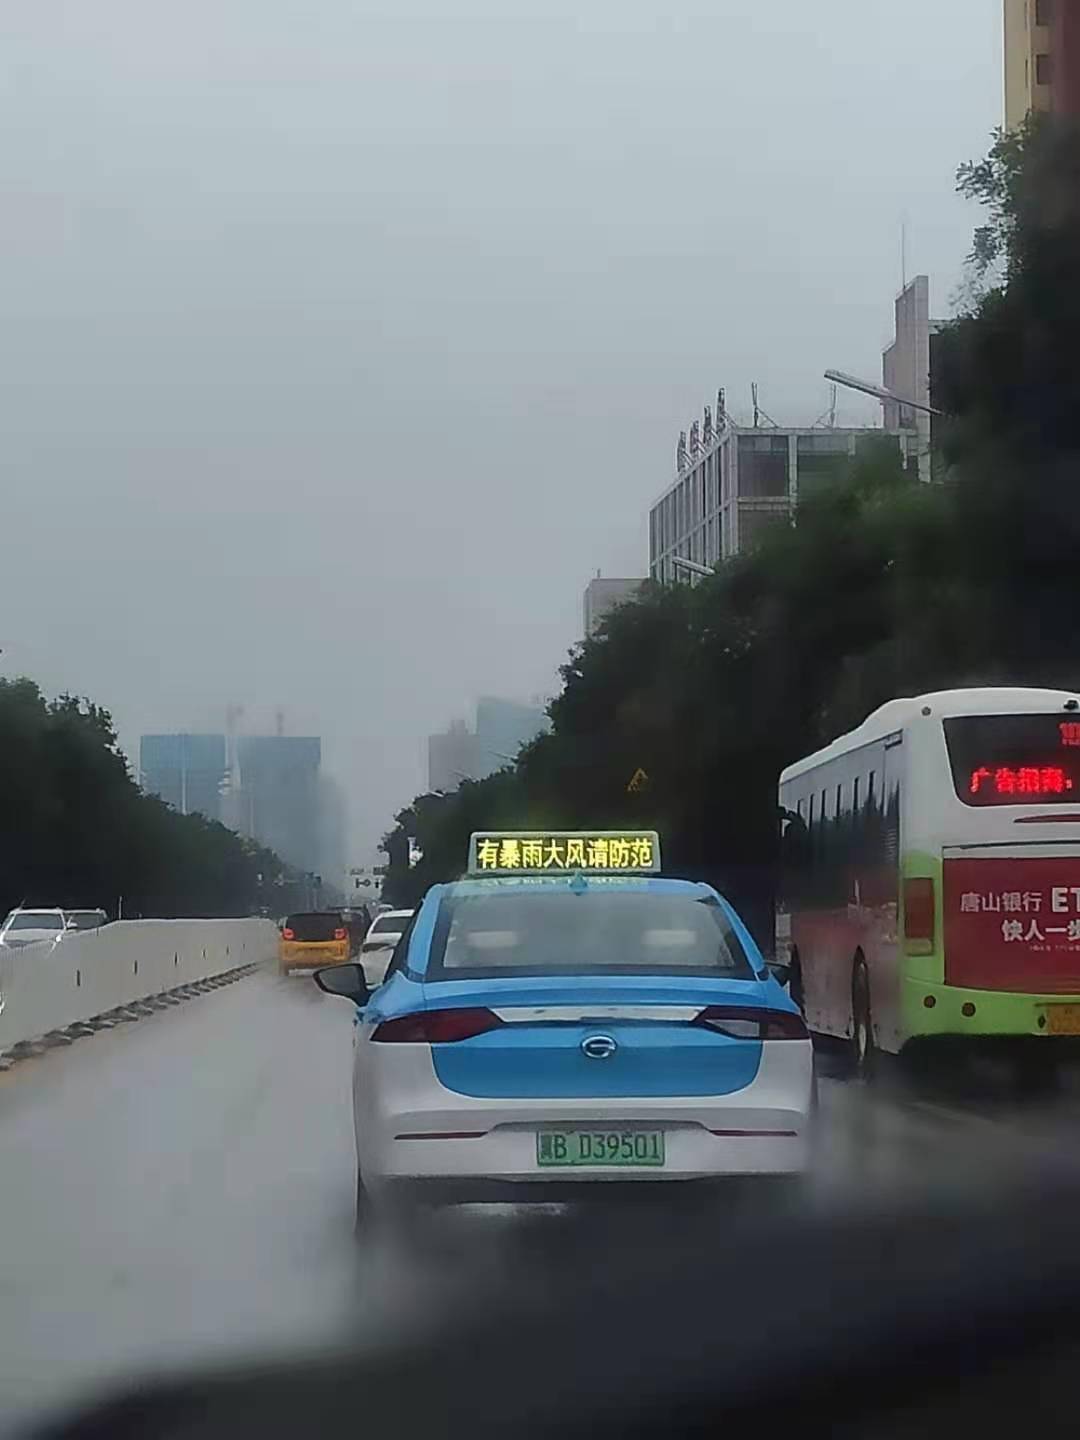 与往日不同的是,今天唐山市区的3000余辆出租车车顶显示屏都在滚动